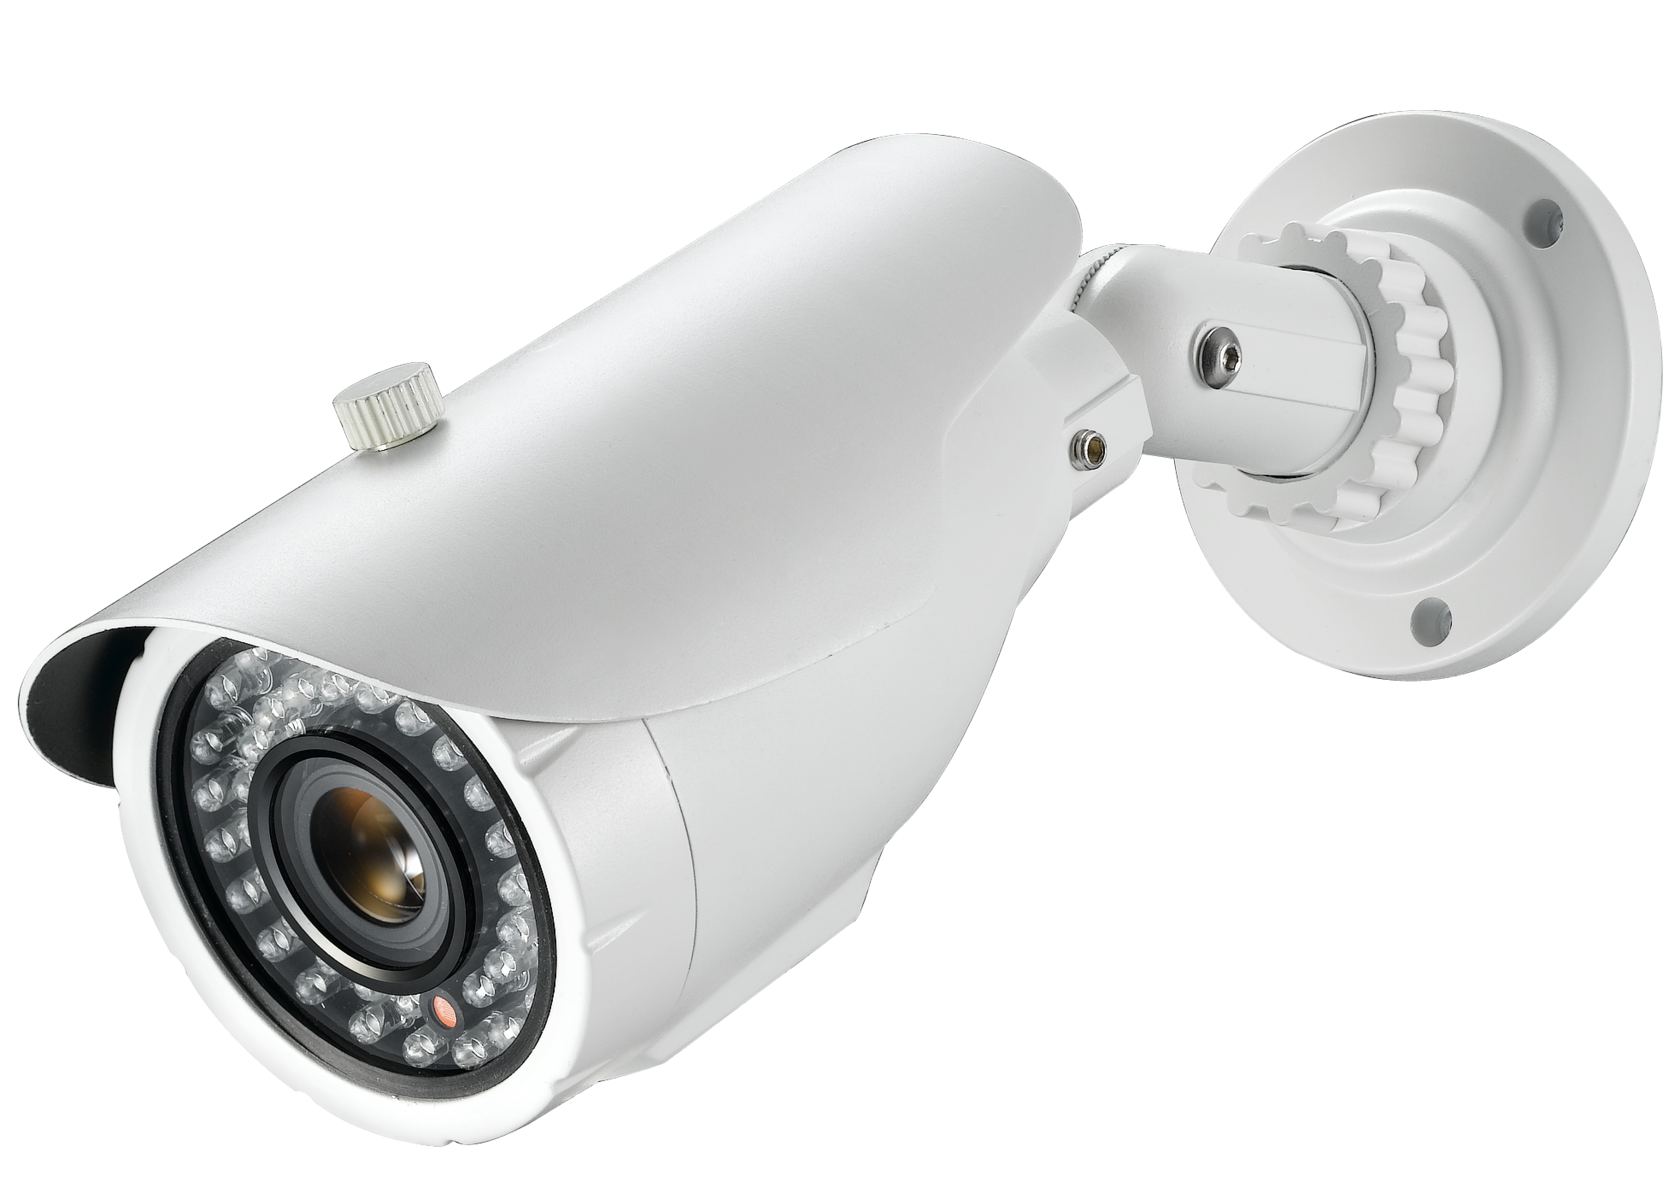 Ip66 камера видеонаблюдения. EVR-CS-1615-AHD цветная уличная AHD CVBS видеокамера 720p f 3.6мм. Камера bolid VCG-320. IP камера UNV UNV IPC-t124-apf28 2.8 мм с ИК-подсветкой. Камеры видеонаблюдения томск